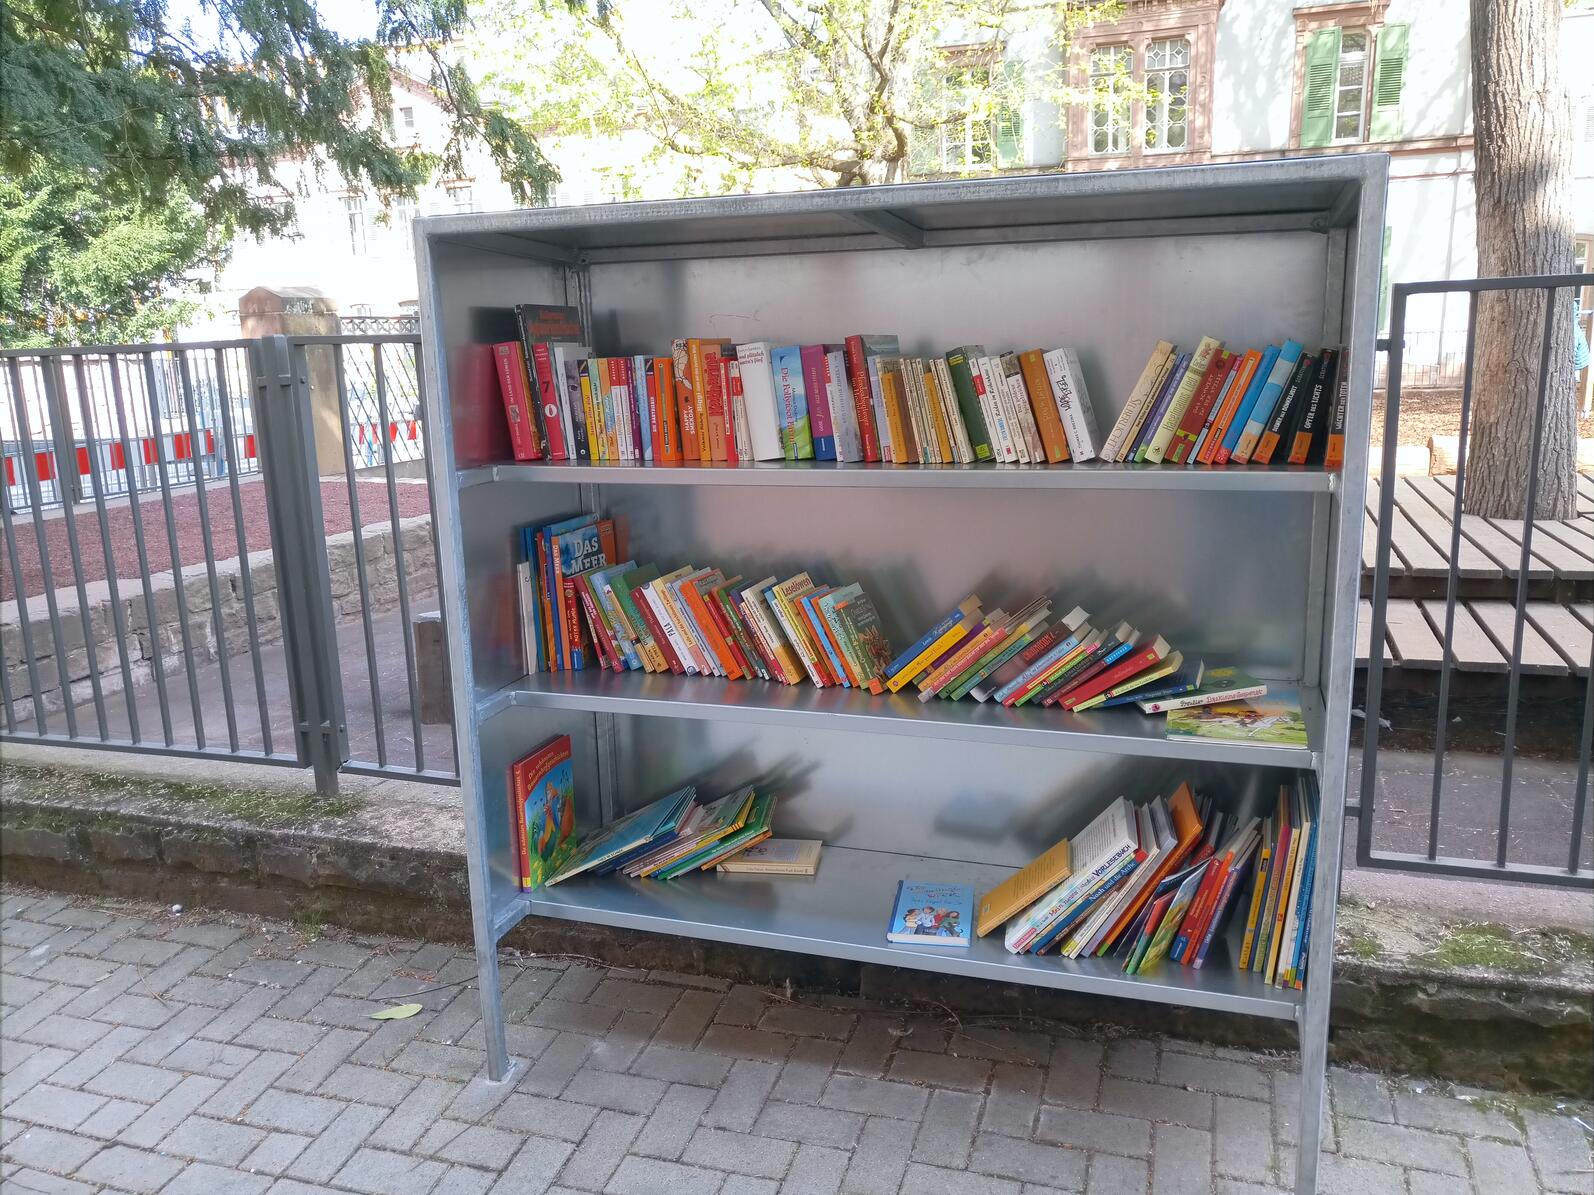 Foto eines Bücherregals im Freien. Es ist etwa zur Hälfte mit Büchern gefüllt.